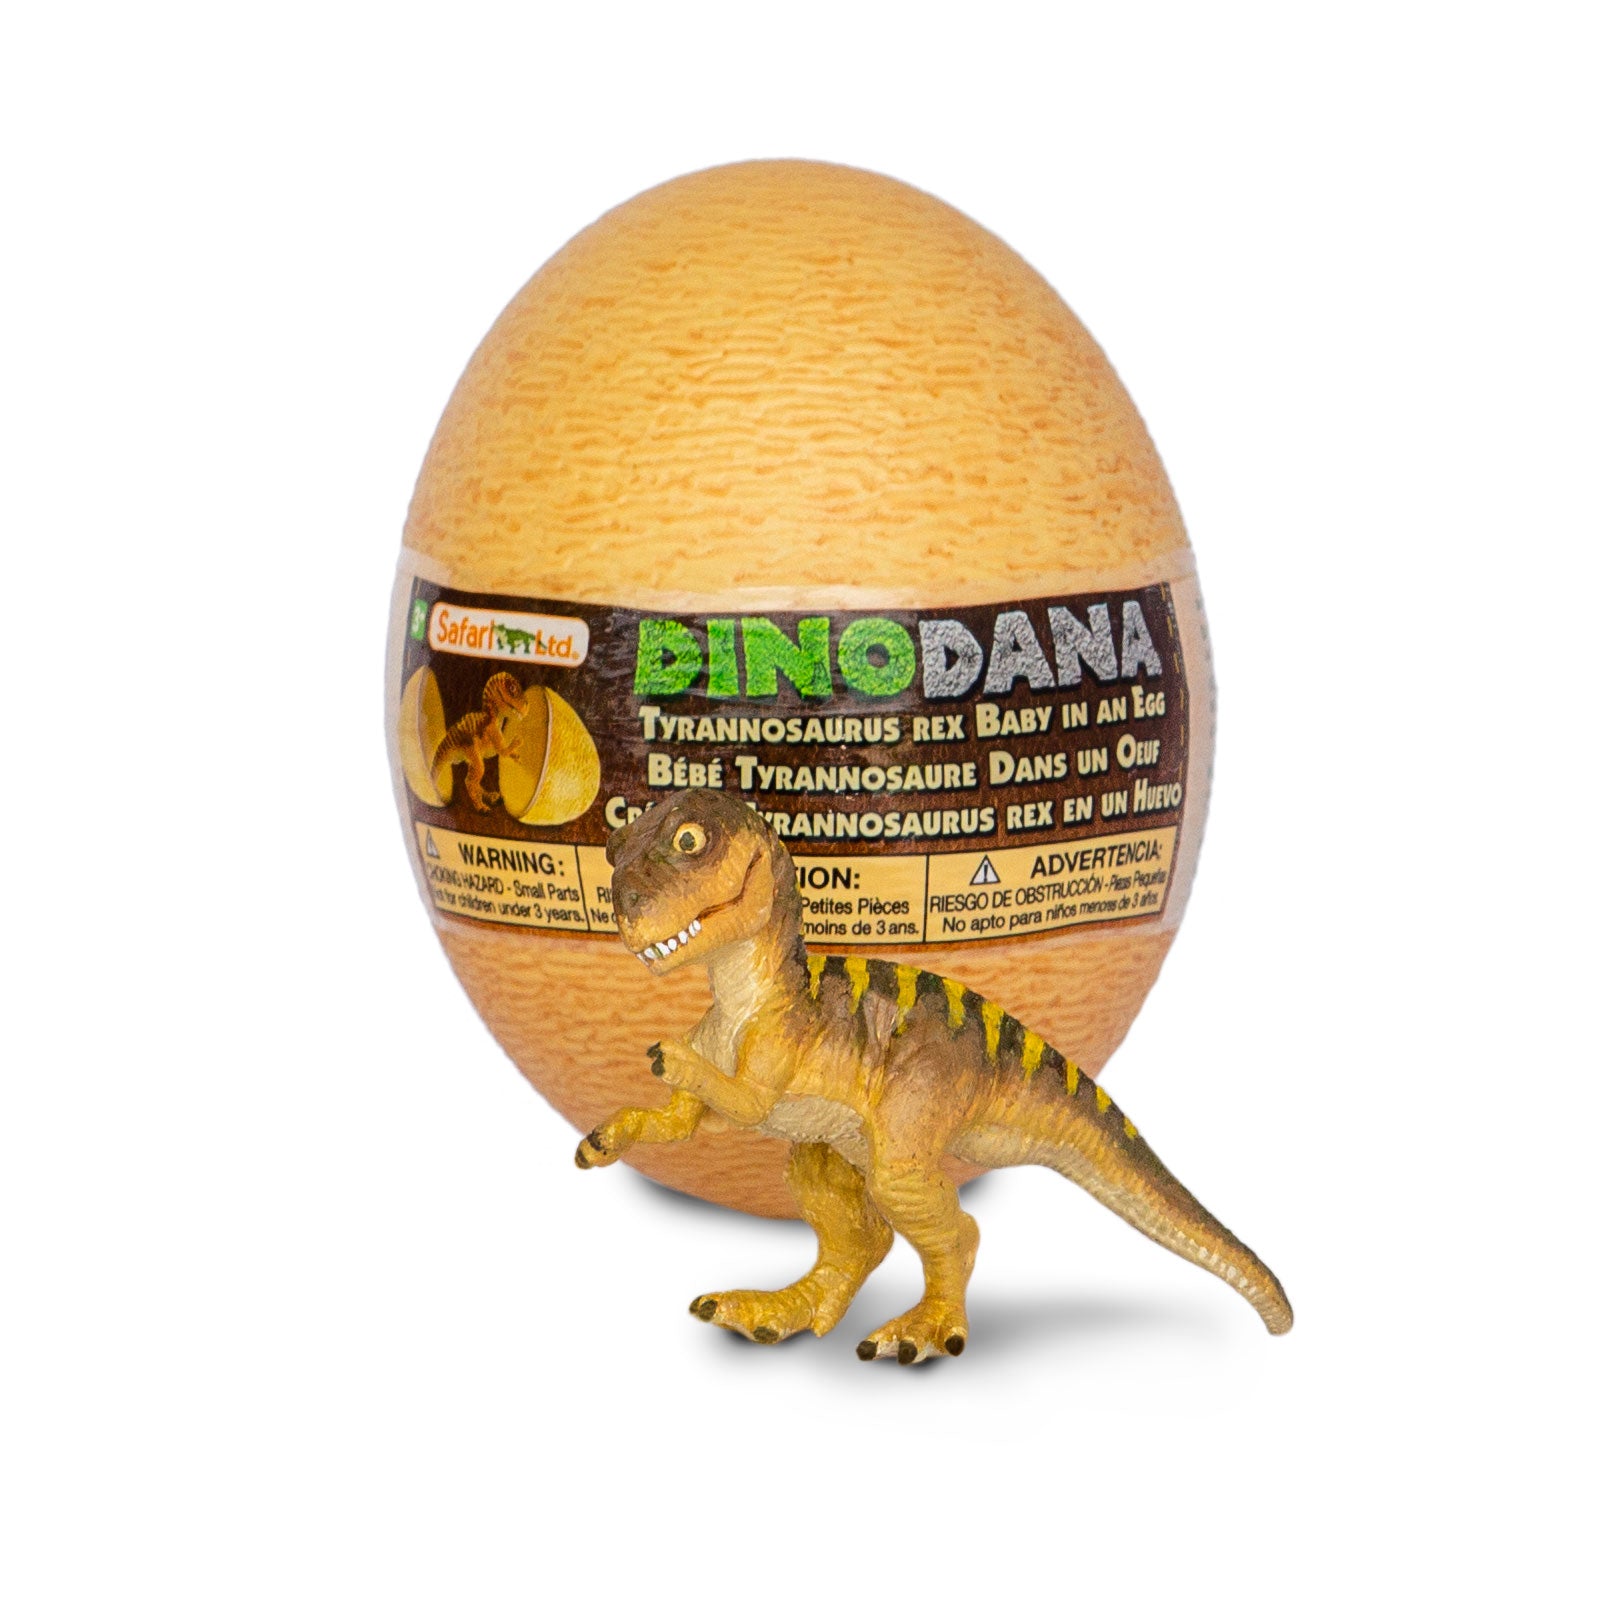 Estudo revela que bebê de Tiranossauro rex tinha tamanho de um